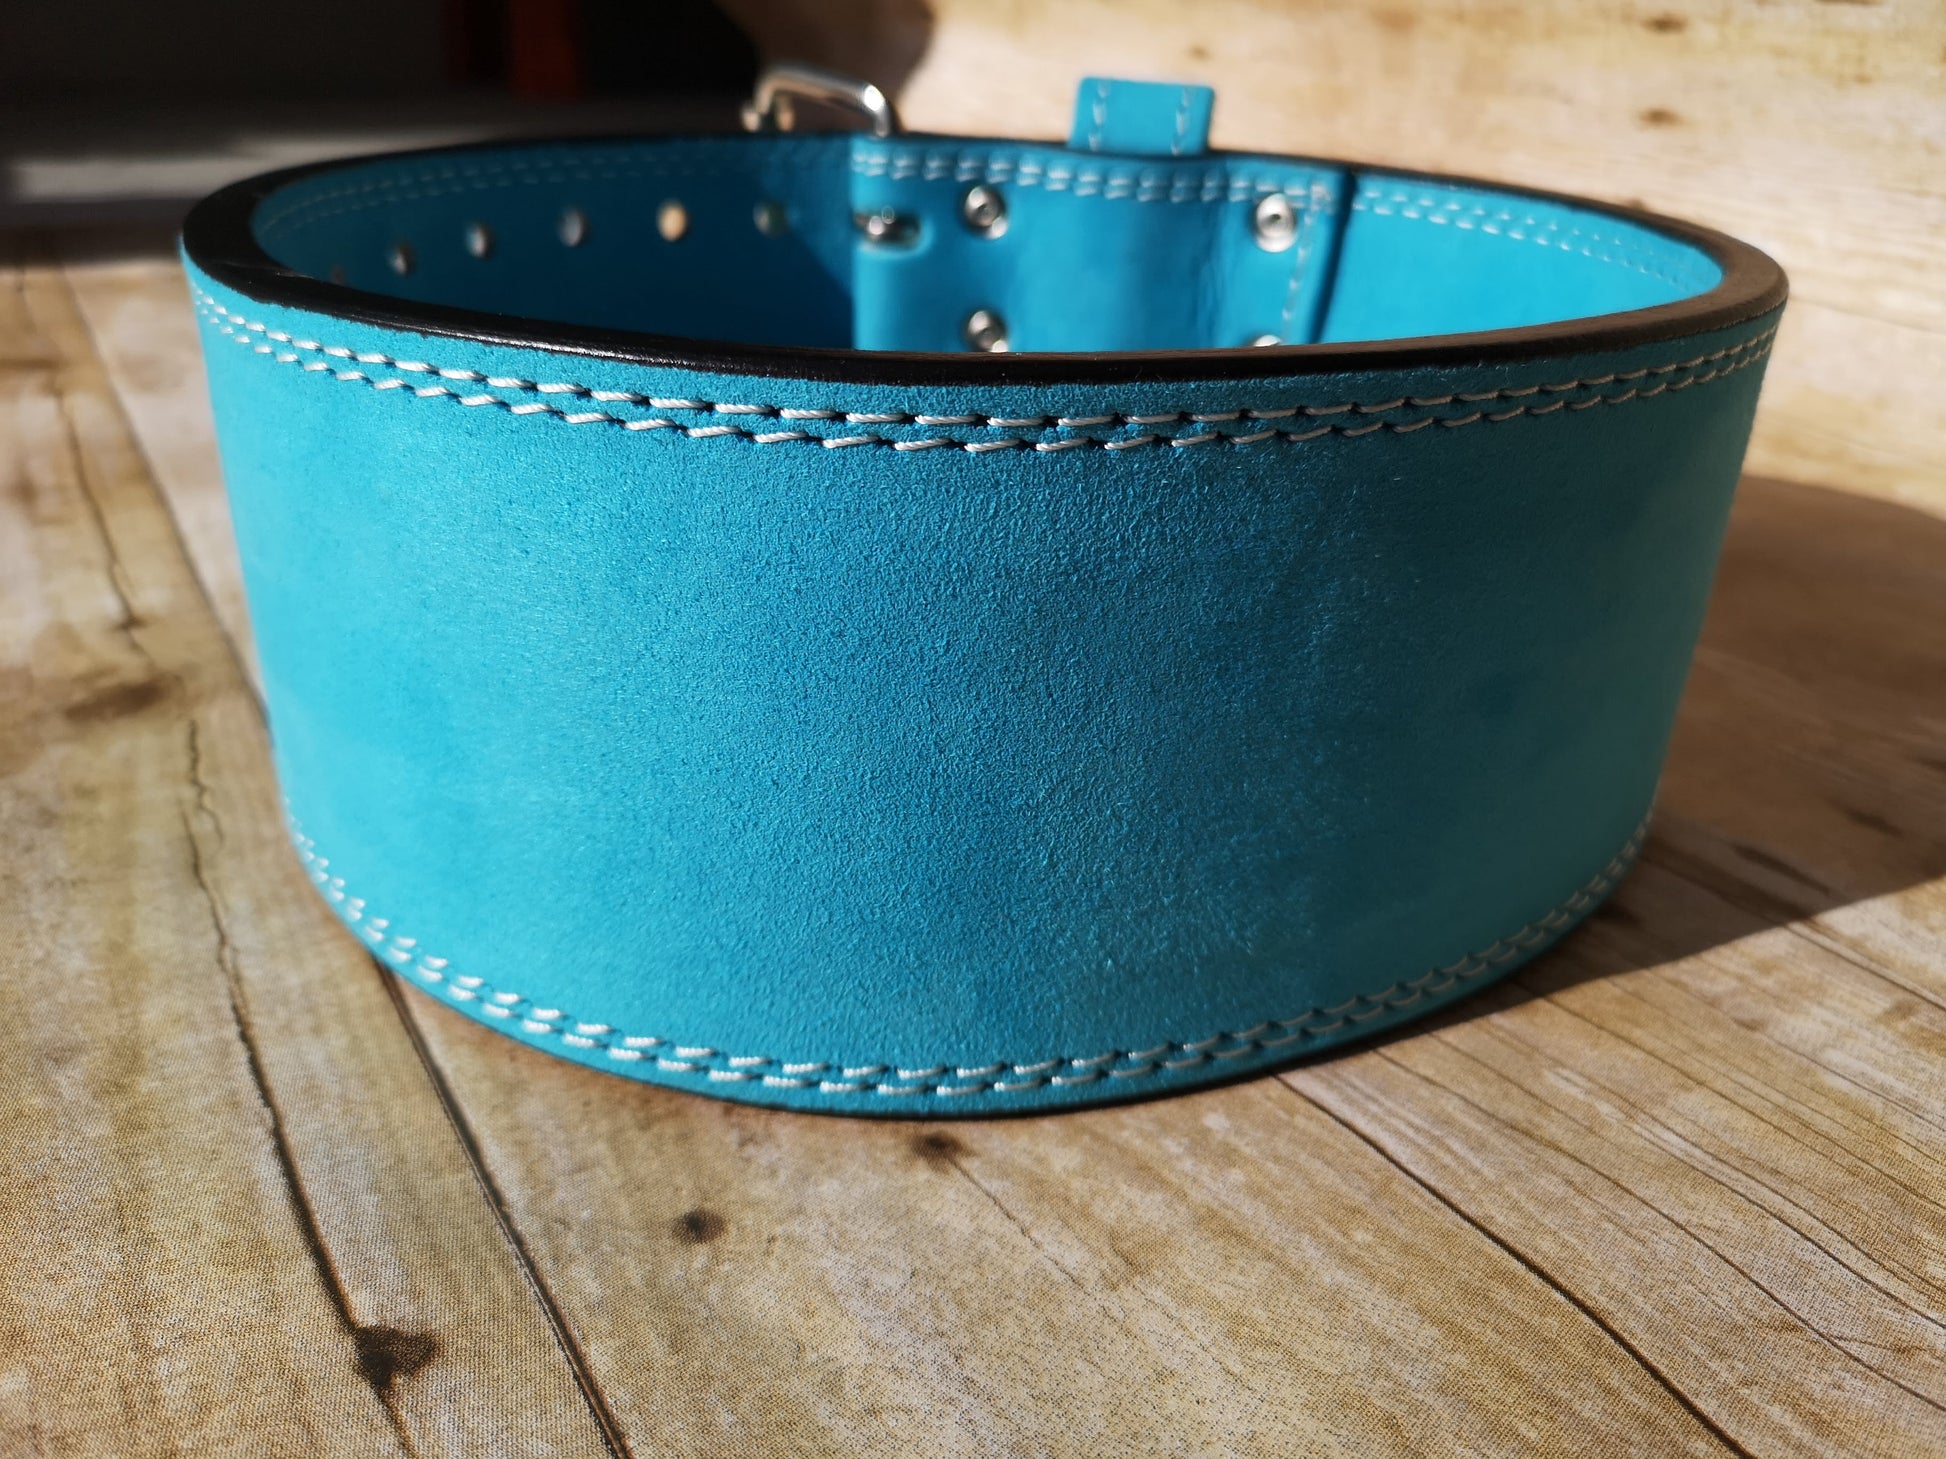 BESPOKE color belt: custom double prong buckle belt – Resolute Strength Wear